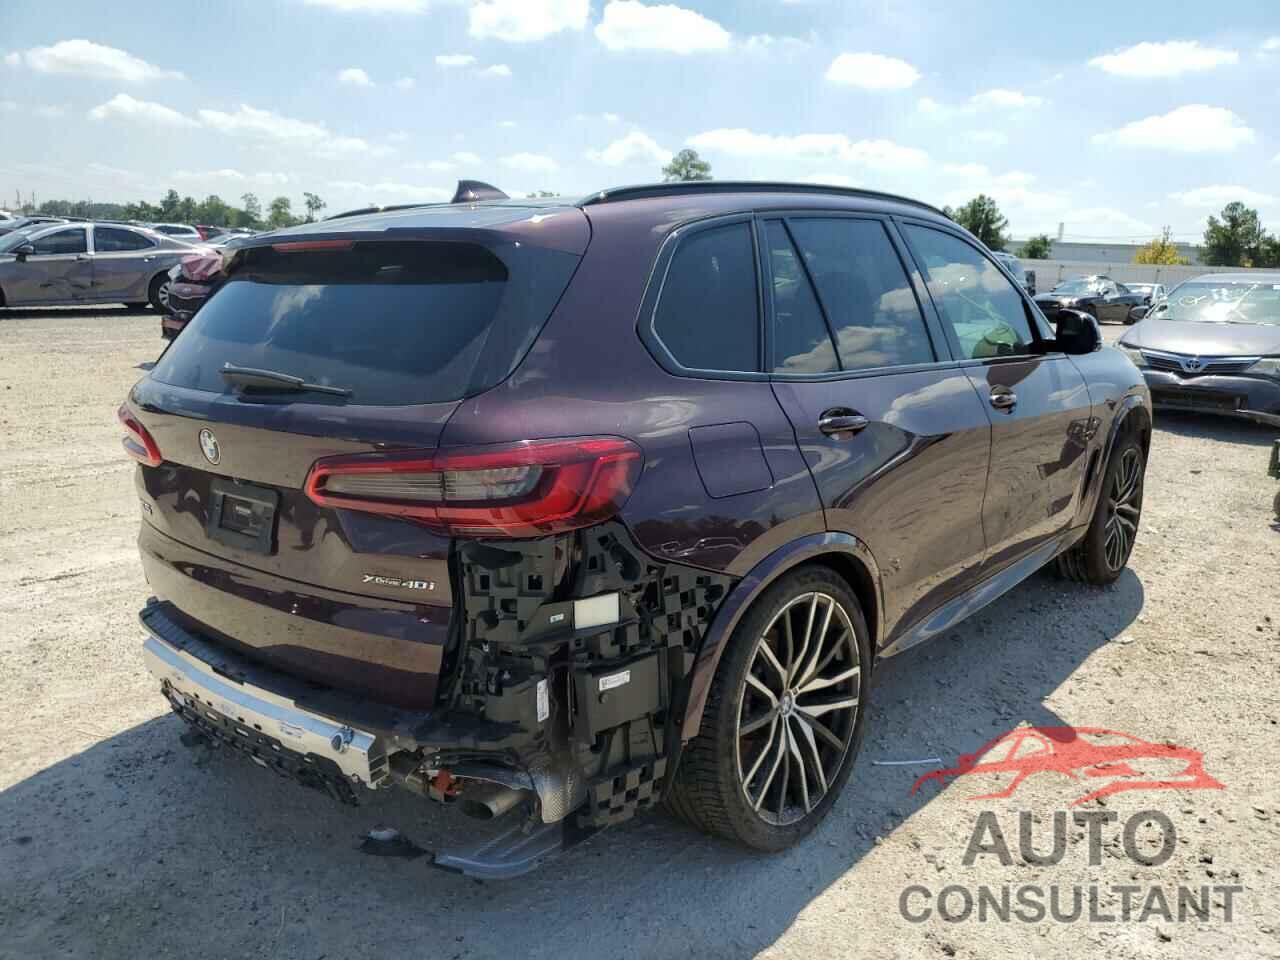 BMW X5 2019 - 5UXCR6C57KLL65028